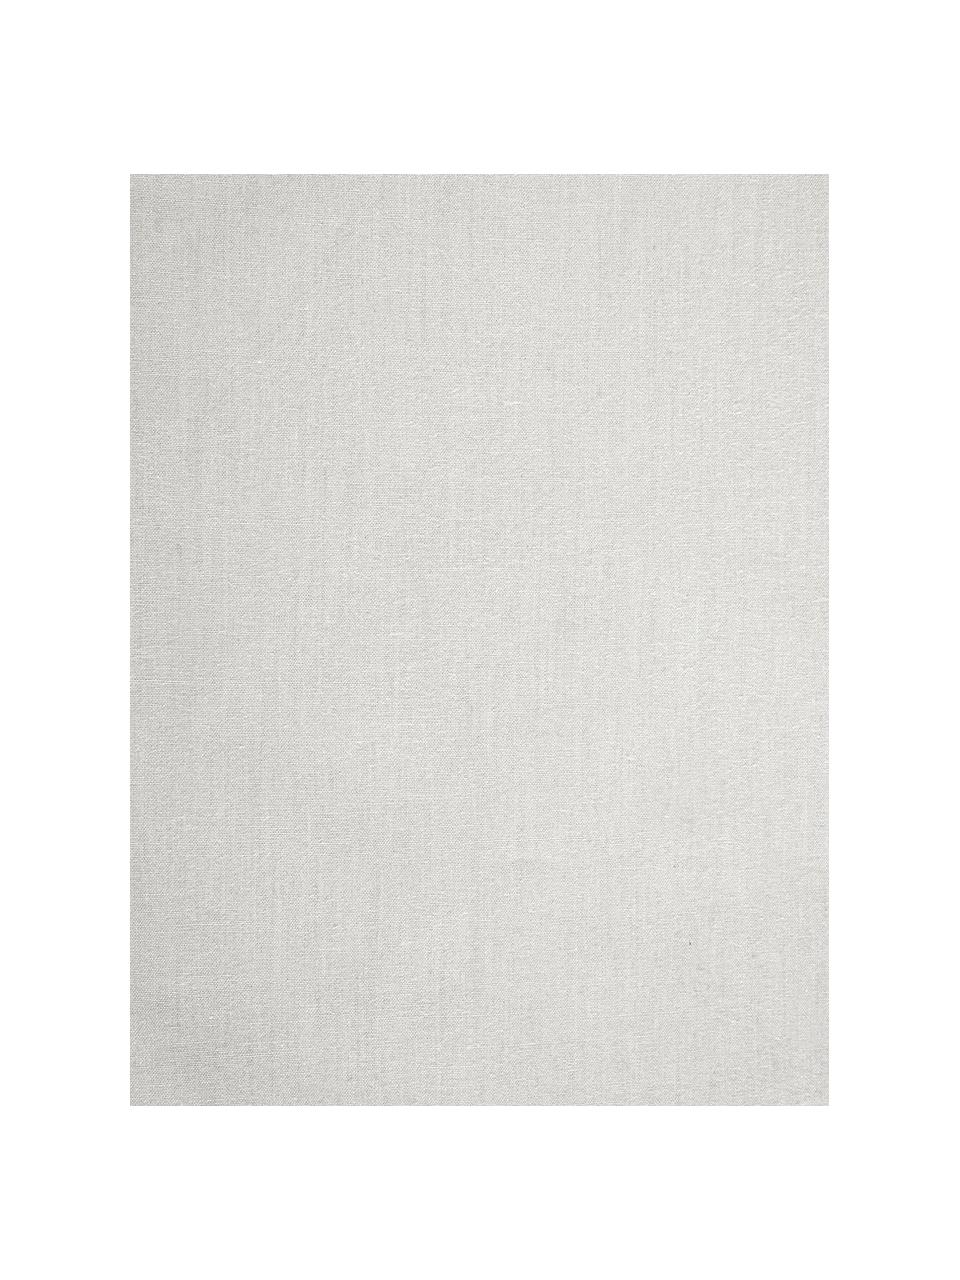 Parure copripiumino in cotone lavato Florence, Tessuto: percalle, Grigio chiaro, 255 x 200 cm + 2 federe 50 x 80 cm